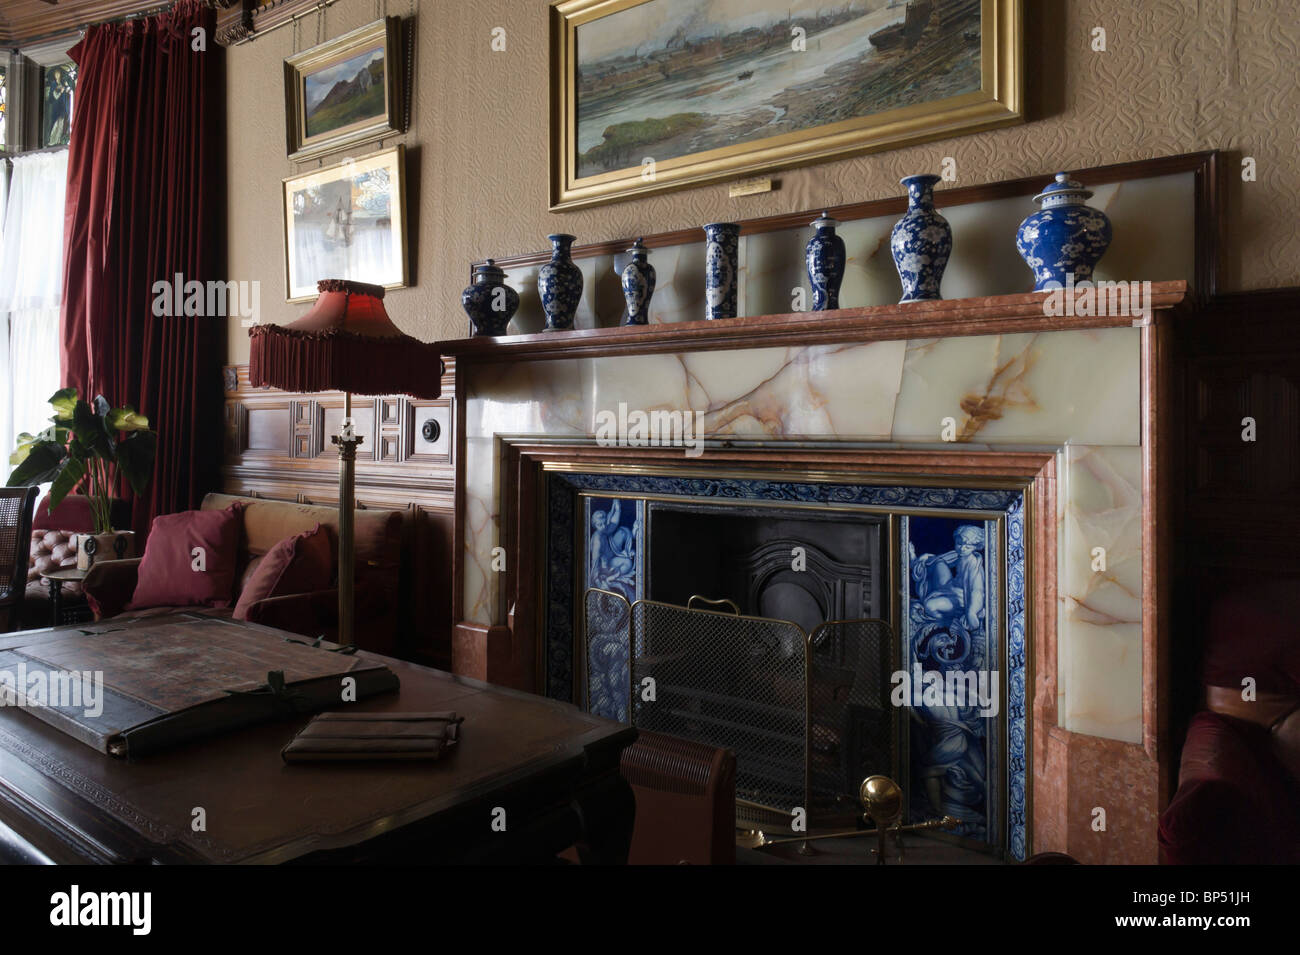 Cragside historisches Haus Northumberland UK - Interieur - Kaminaufsatz Kamin und Ornamente Stockfoto